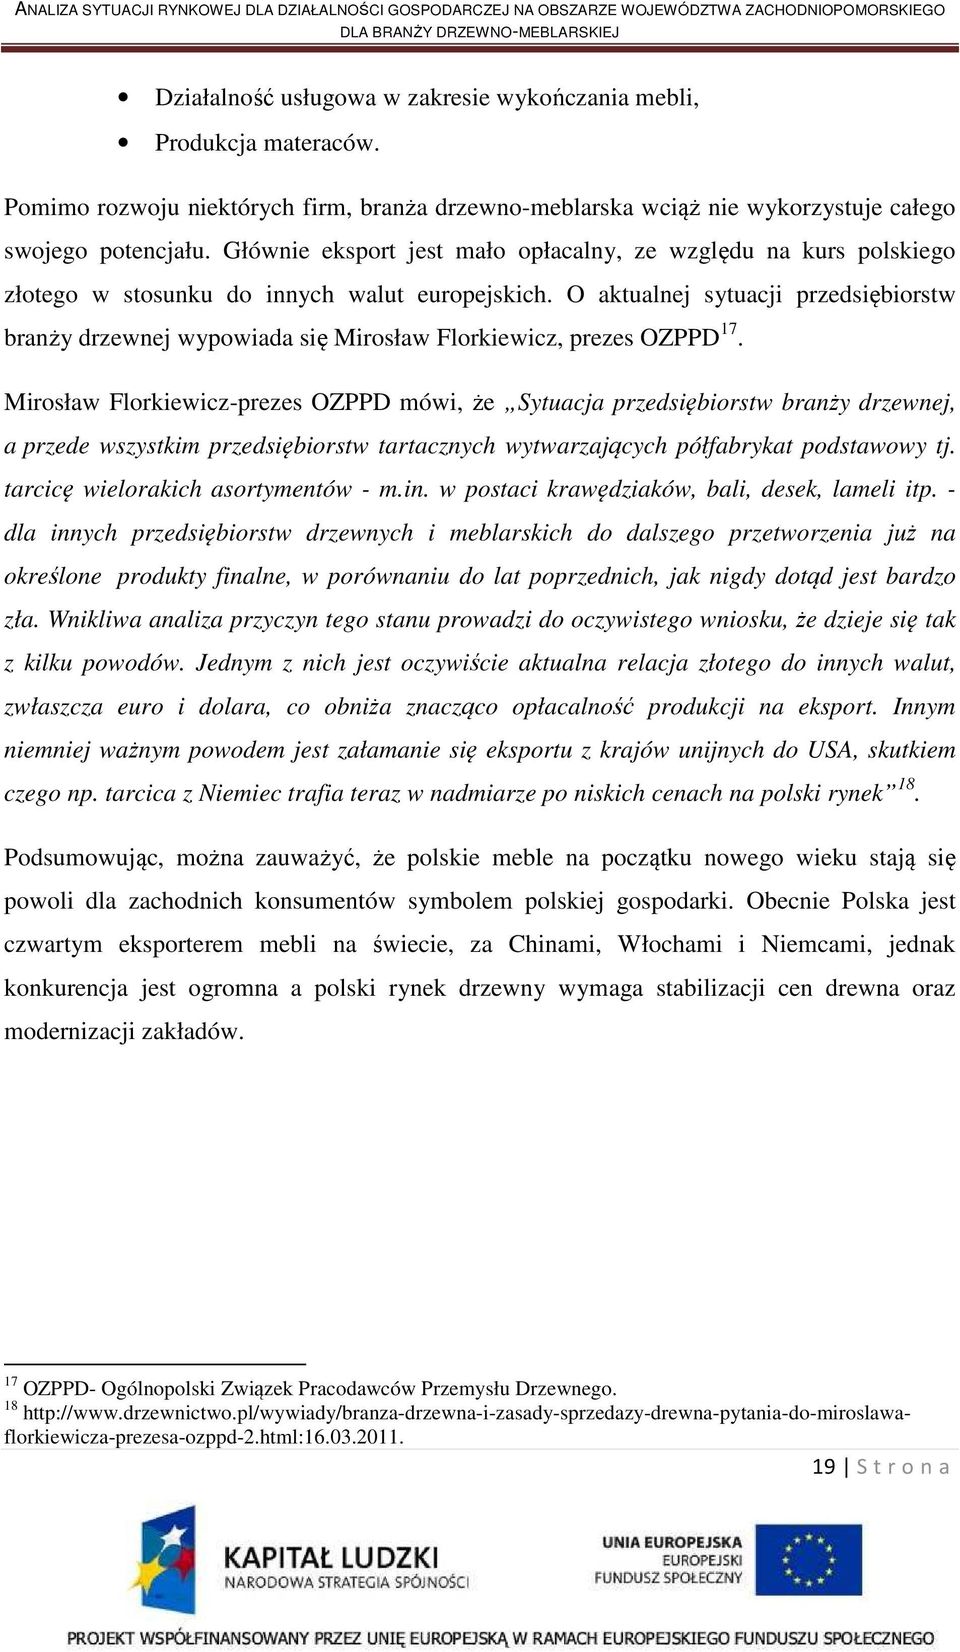 O aktualnej sytuacji przedsiębiorstw branży drzewnej wypowiada się Mirosław Florkiewicz, prezes OZPPD 17.